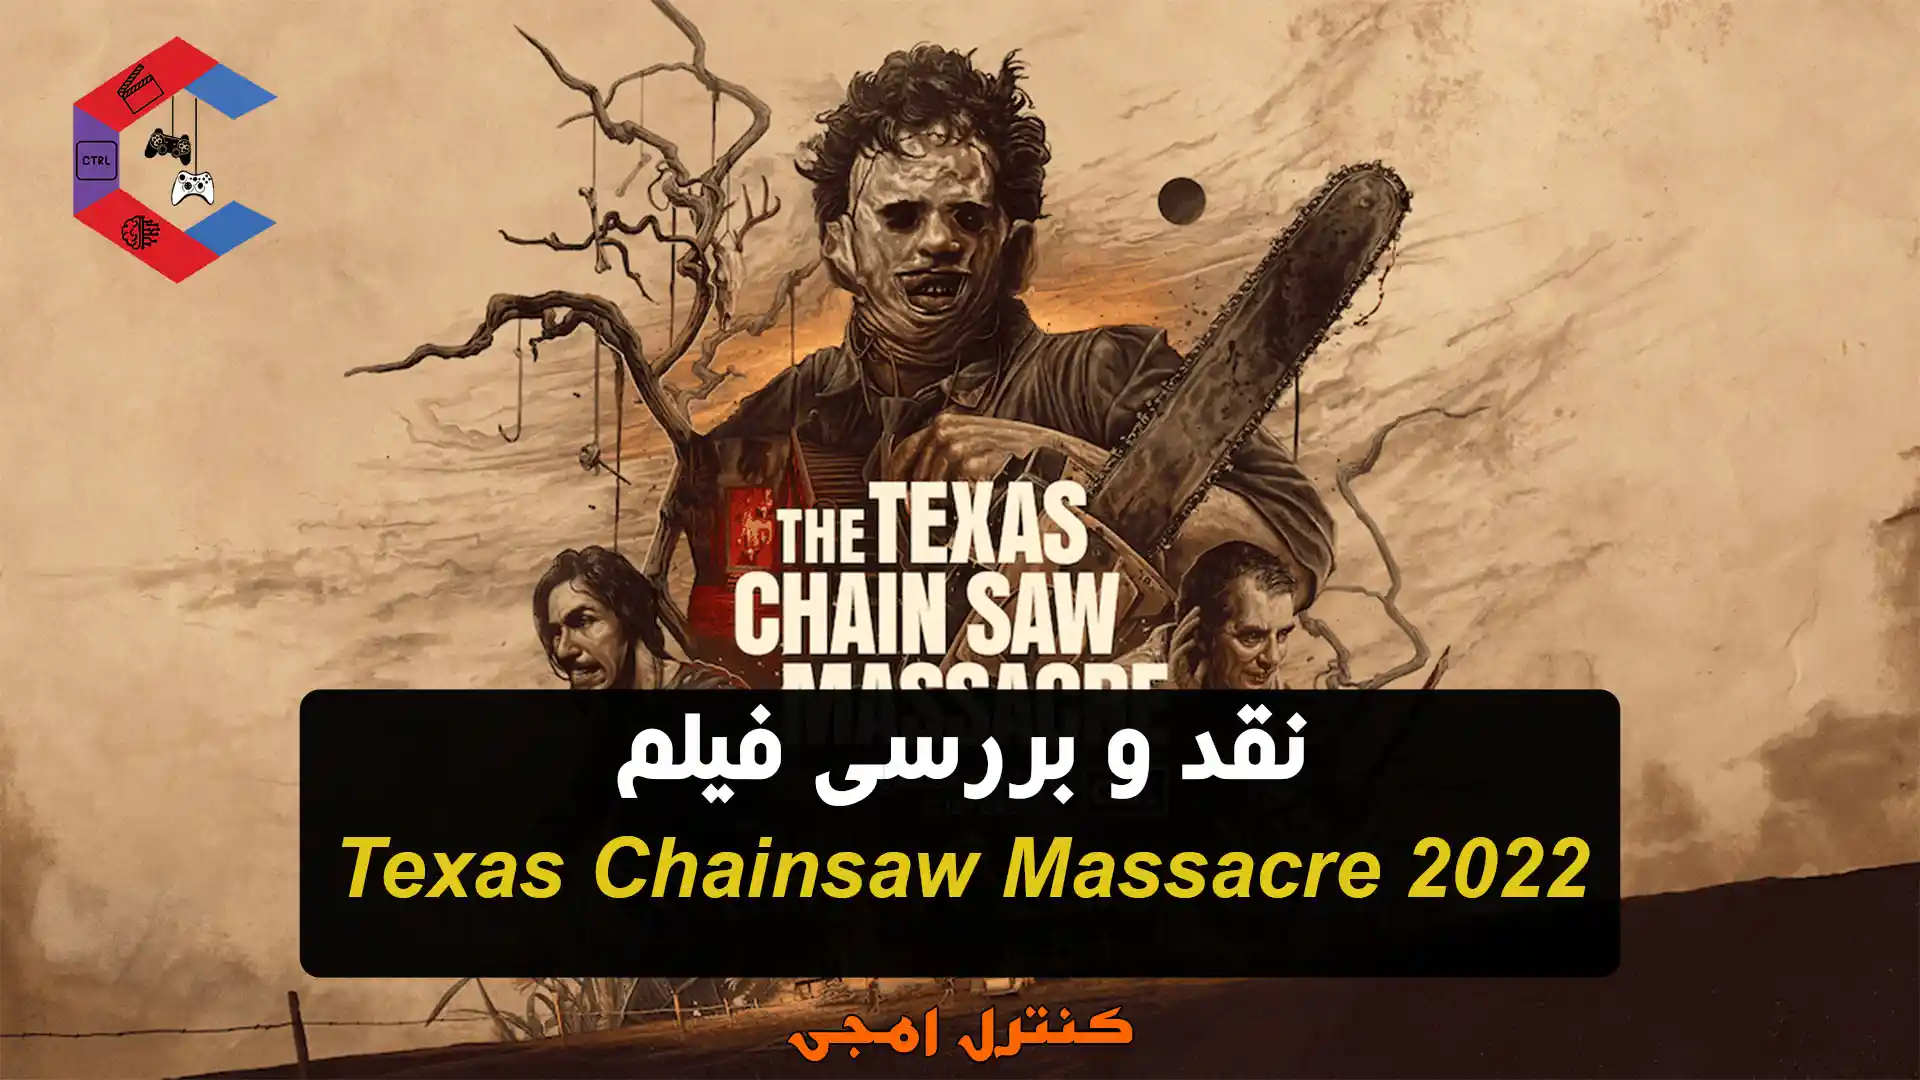 نقد و بررسی فیلم کشتار با اره برقی در تگزاس ۲۰۲۲ Texas Chainsaw Massacre